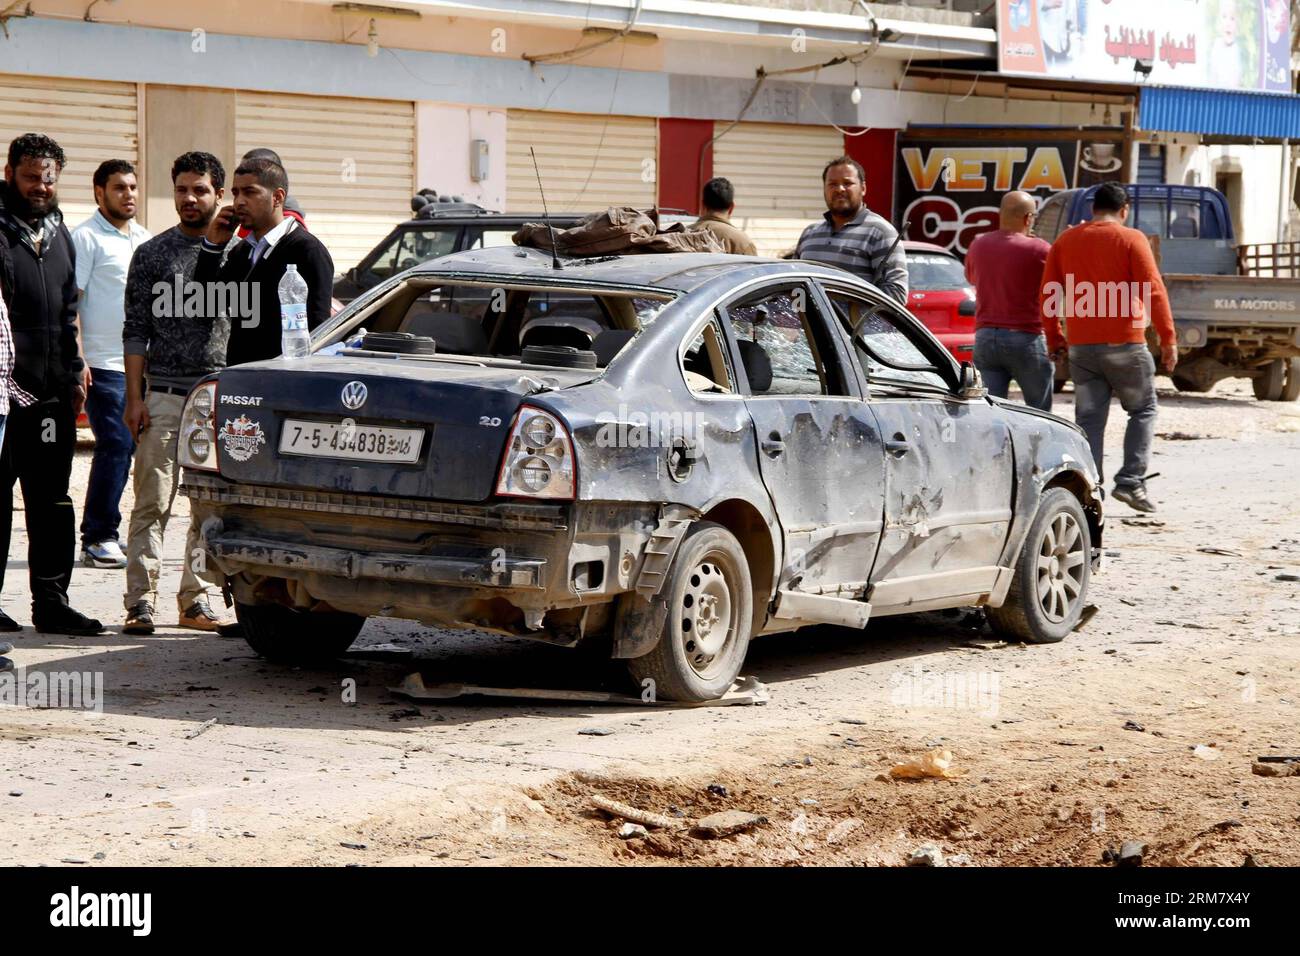 (140317) -- BENGHAZI, 17 mars 2014 (Xinhua) -- des gens vérifient une voiture endommagée à Benghazi, Libye, le 17 mars 2014. Une voiture piégée ciblant un camp militaire libyen à Benghazi a tué au moins cinq soldats et blessé dix autres lundi, ont déclaré des sources militaires et médicales à Xinhua. (Xinhua/Mohammed Elshaiky) LIBYA-BENGHAZI-MILITARY-CAMP-BOMB-ATTACK PUBLICATIONxNOTxINxCHN Benghazi Mars 17 2014 célébrités XINHUA vérifier une voiture endommagée à Benghazi Libye Mars 17 2014 une voiture piégée visant un camp militaire libyen à Benghazi A TUÉ au moins cinq soldats et blessé dix autres lundi militaire et médical Banque D'Images